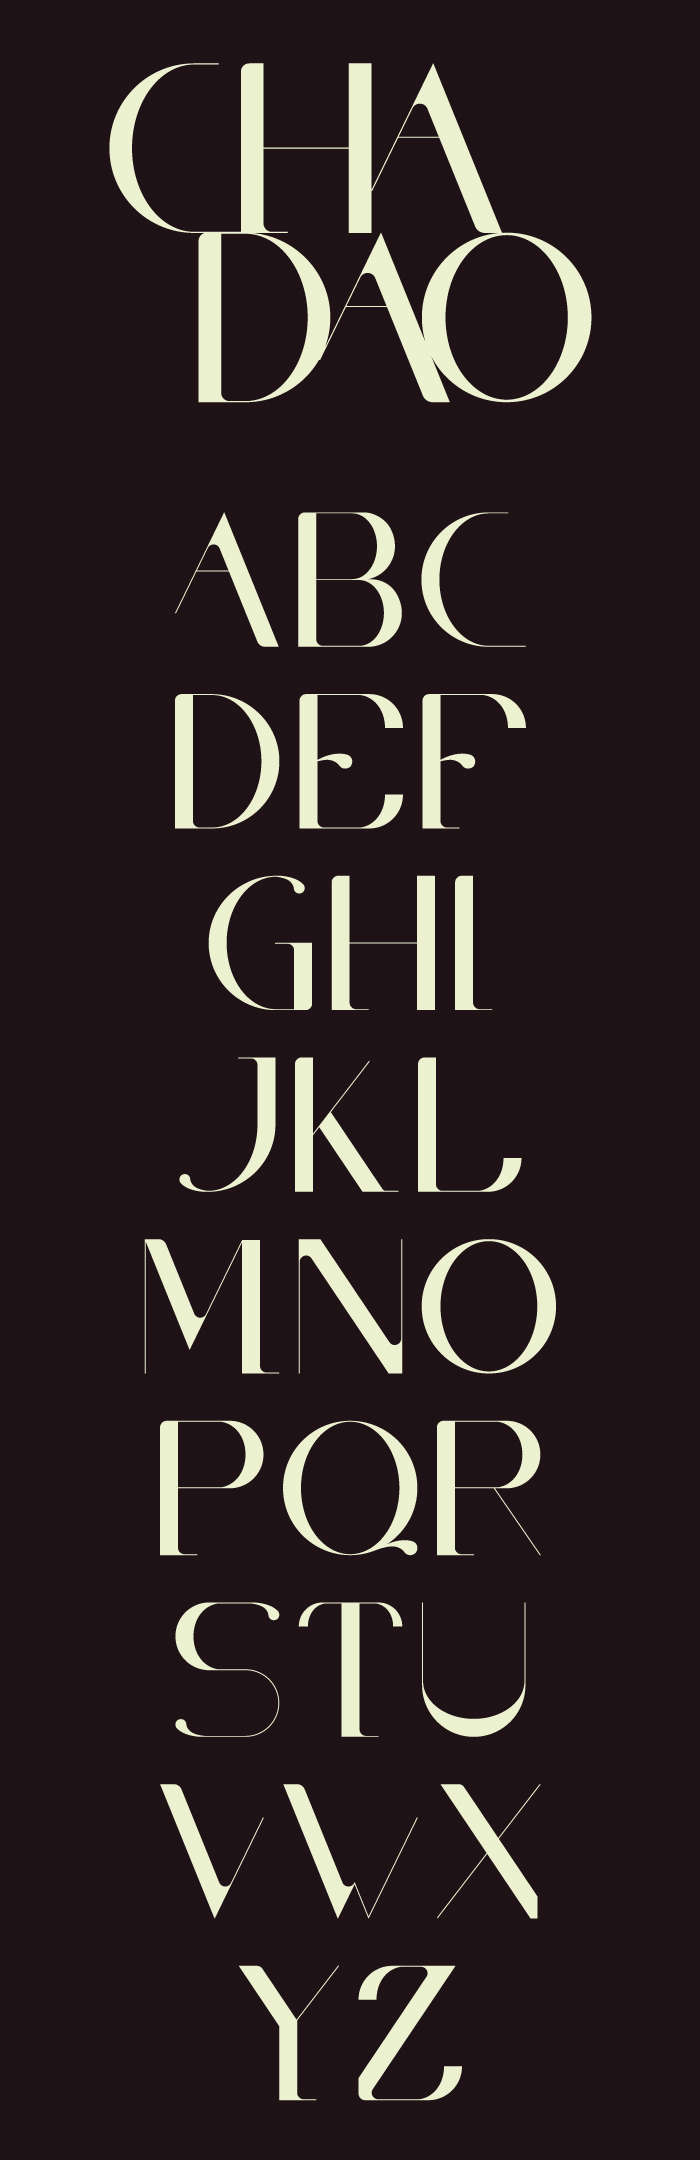 Cha Dao, typeface